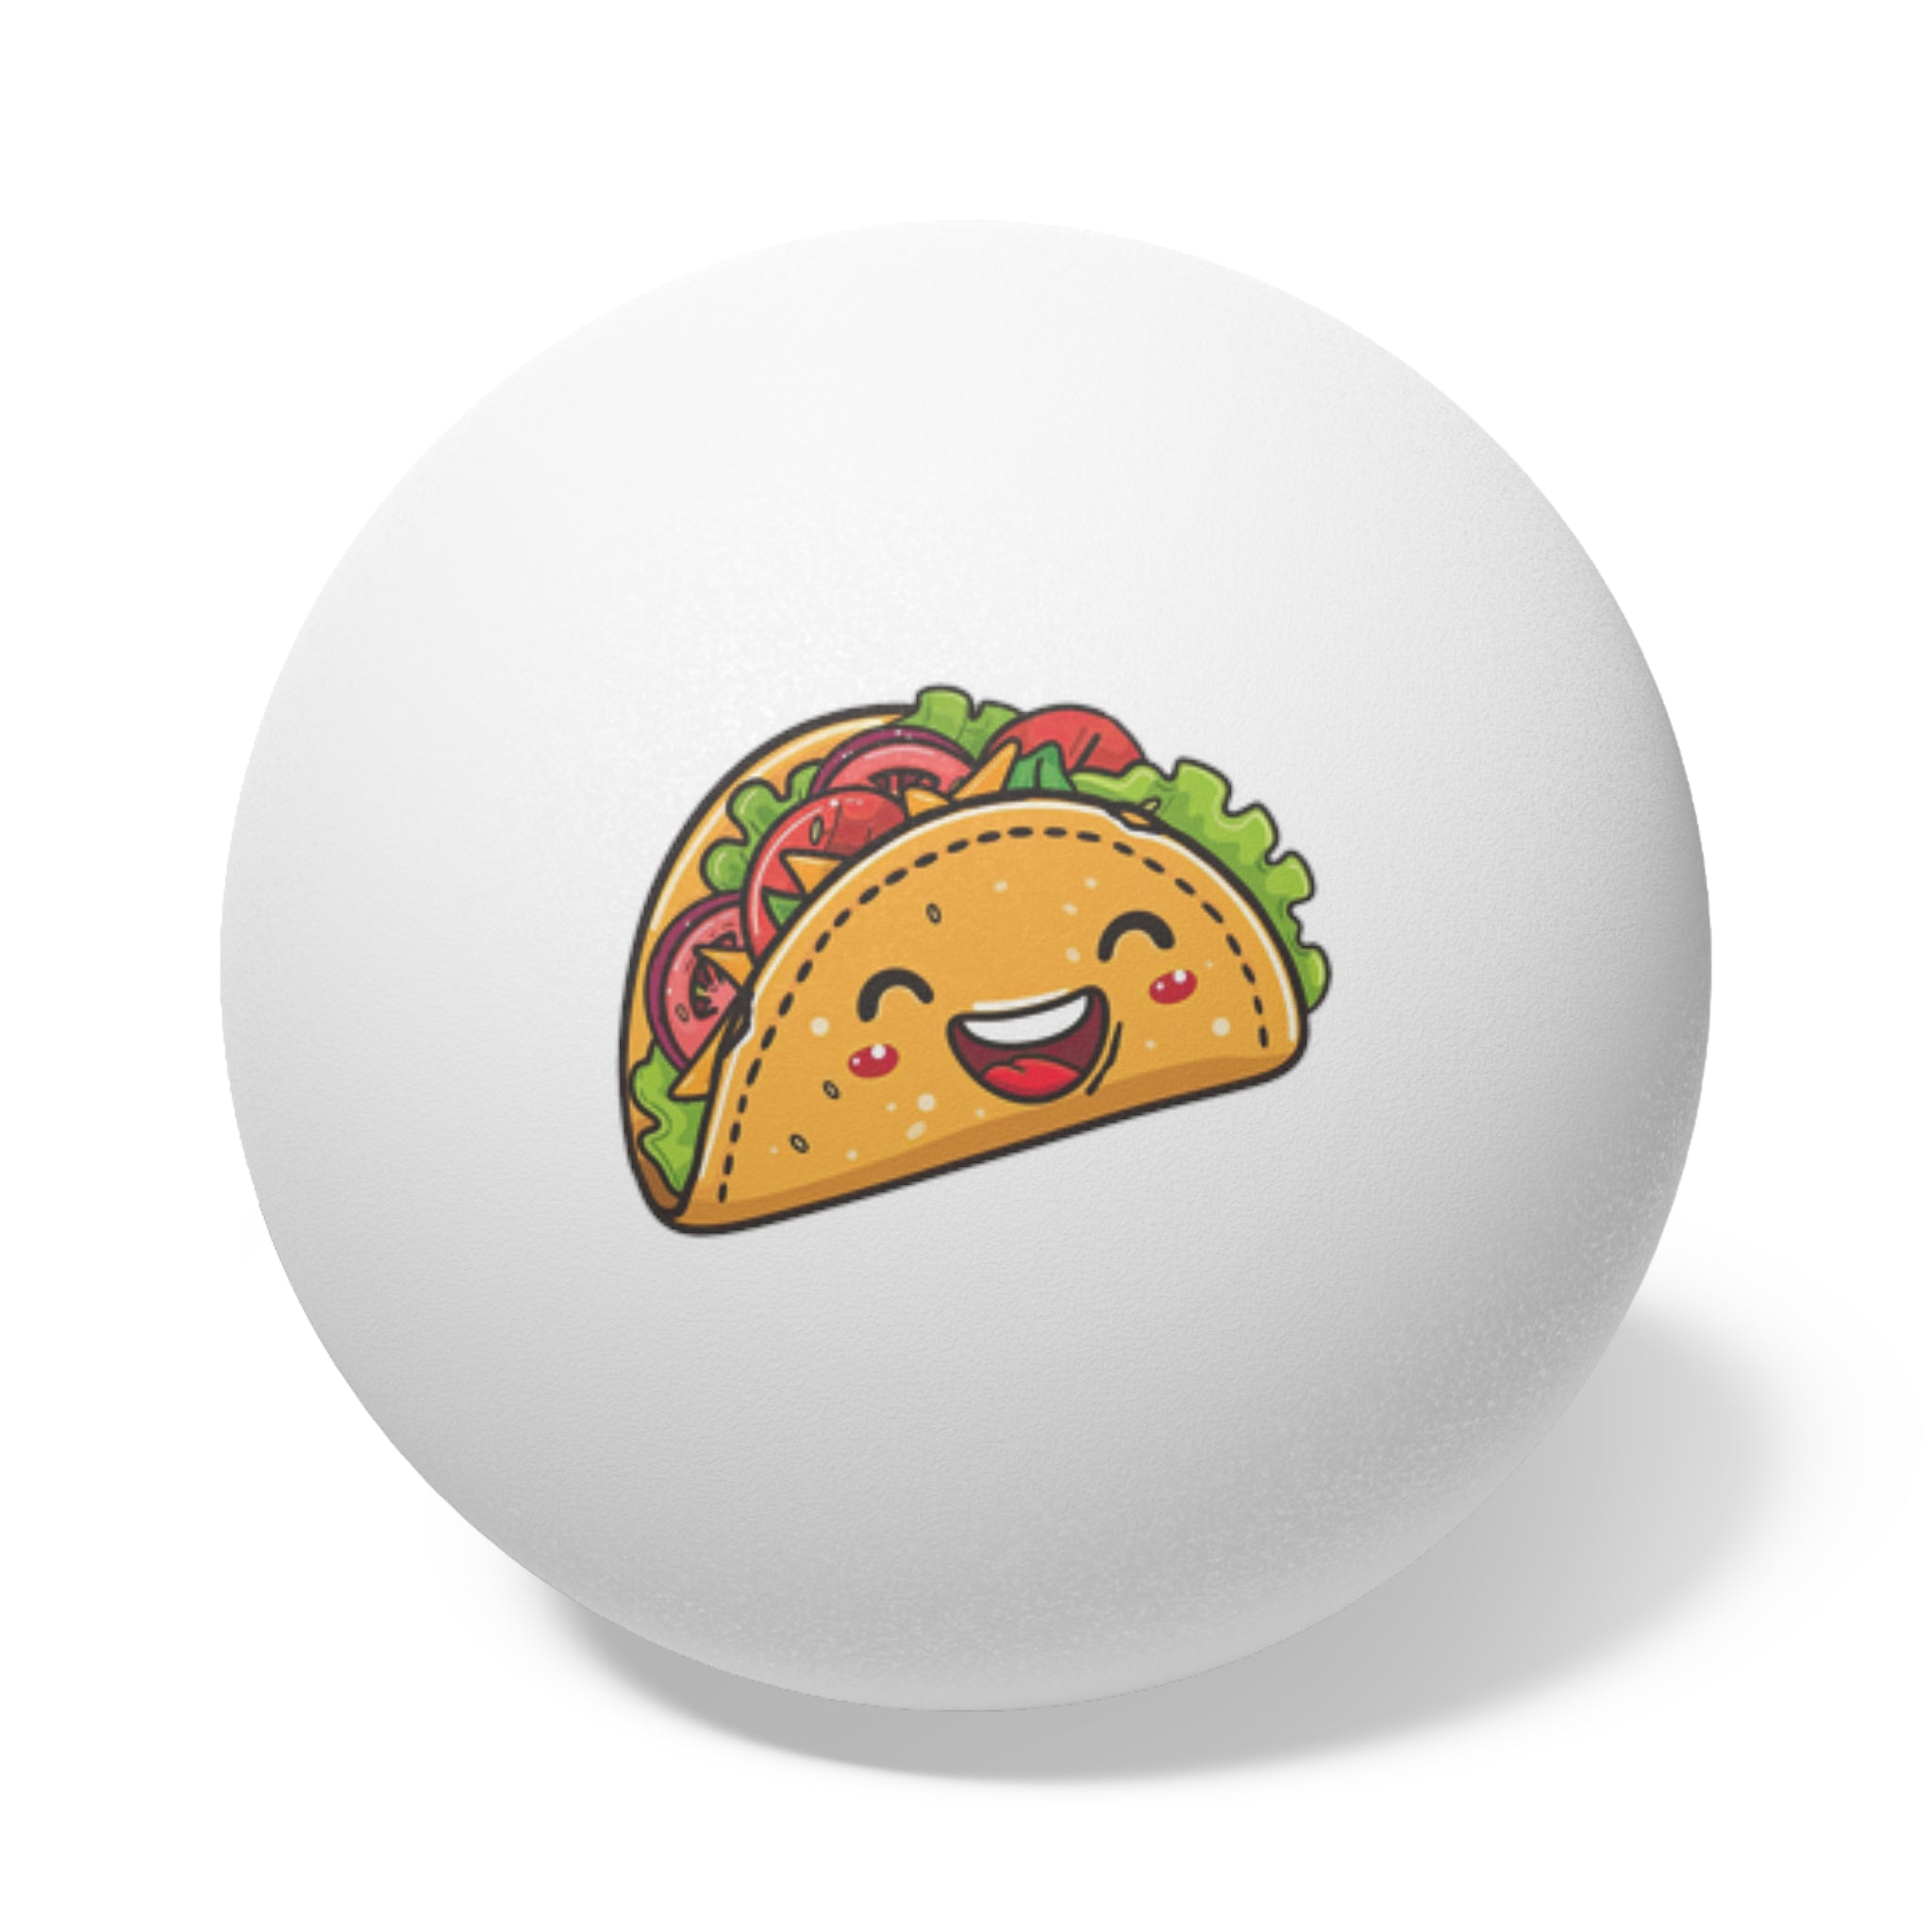 Taco Ping Pong Balls, 6 pcs